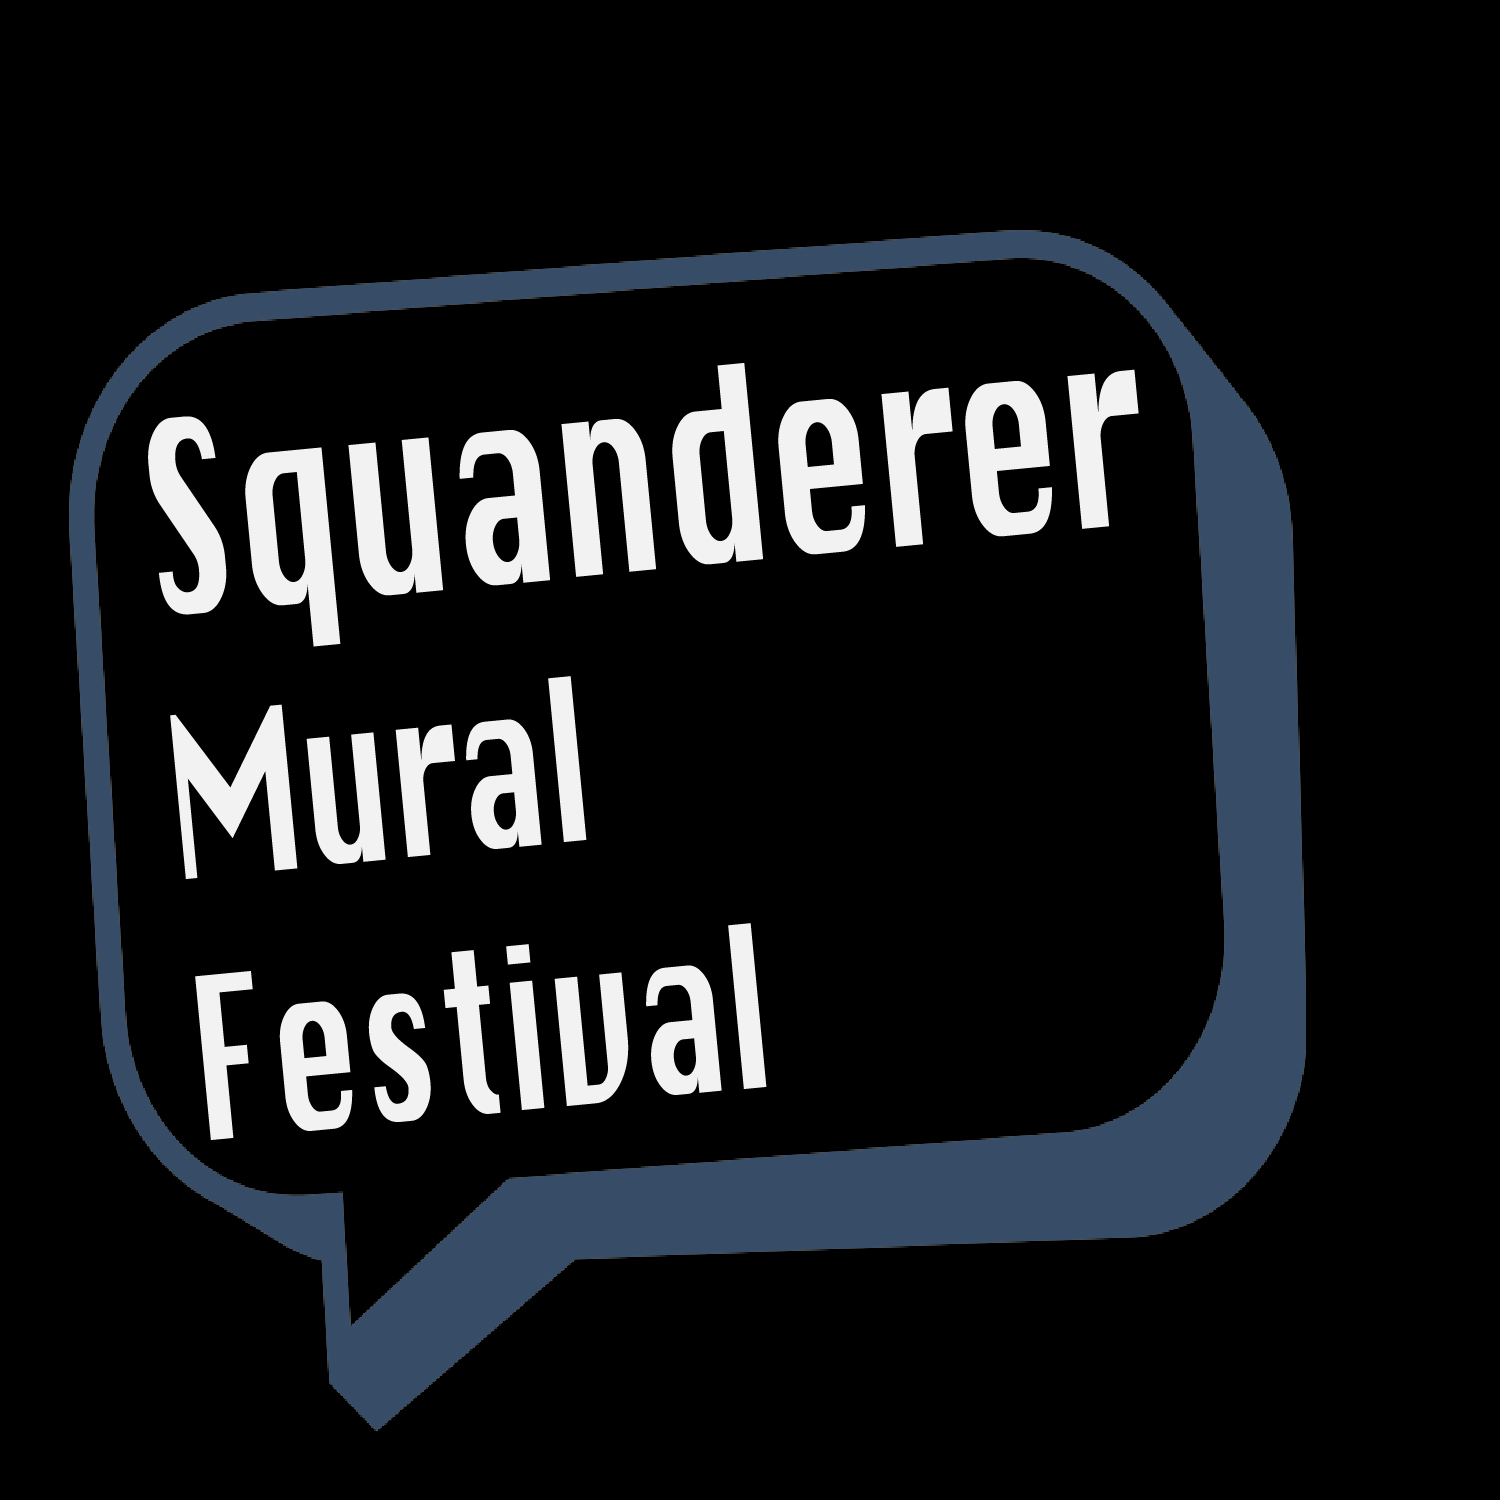 Squanderer Mural Festival